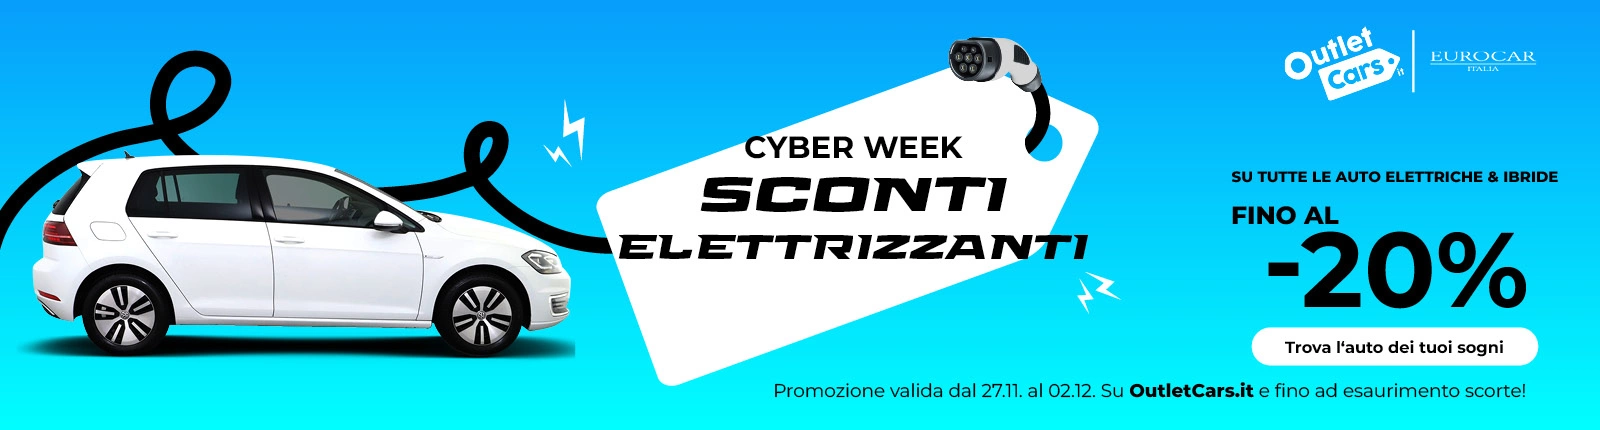 Cyber Week OC